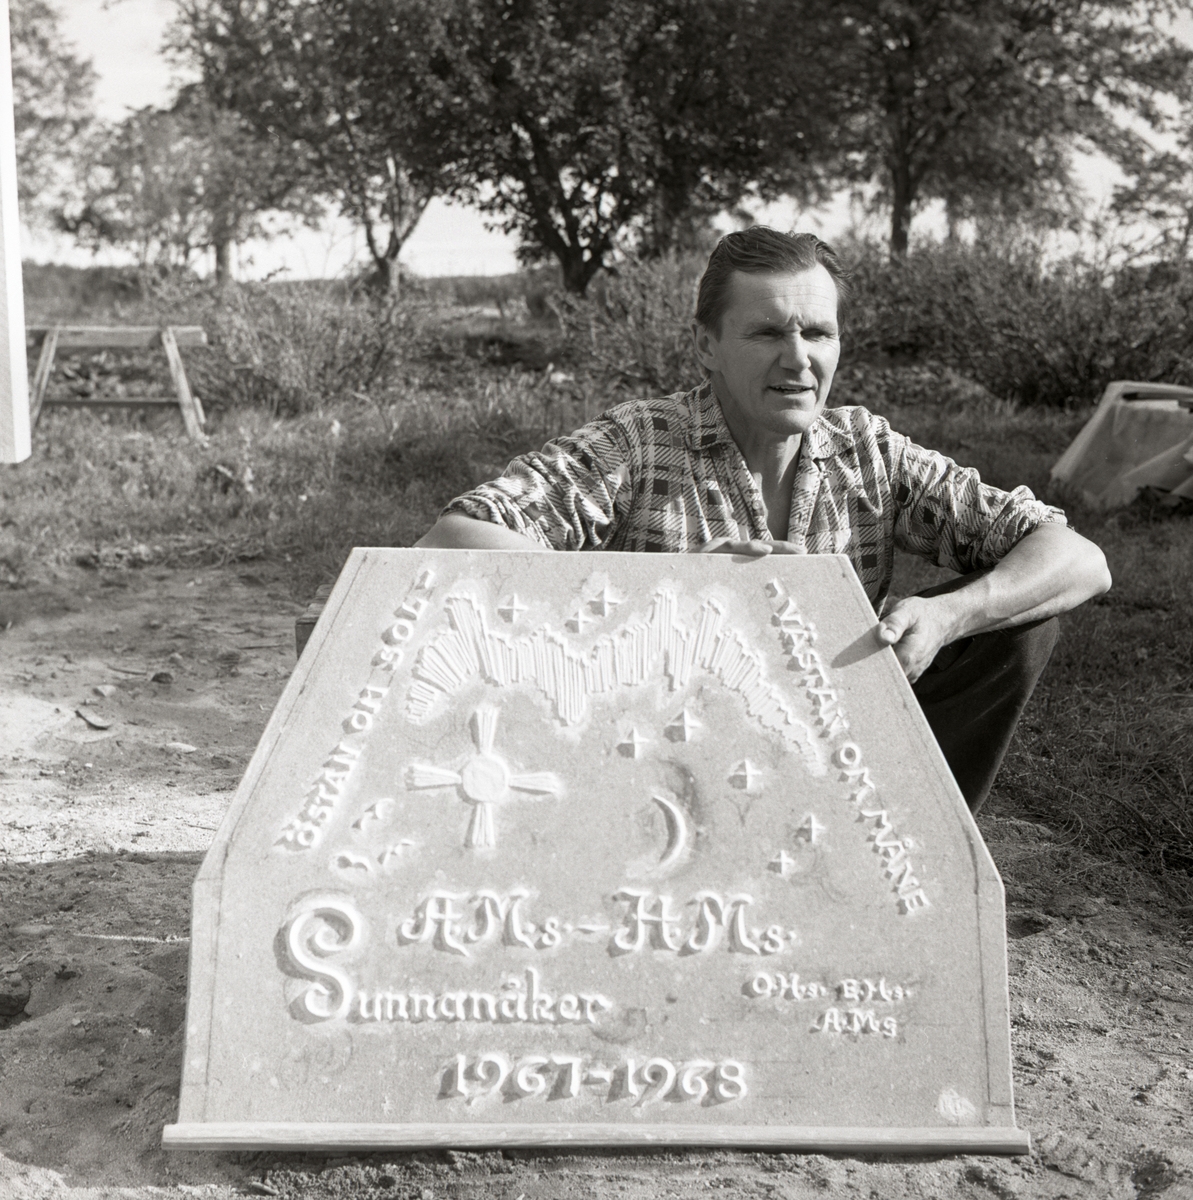 Hilding håller upp en gjutform med årtal och initialer till öppna spisen vid gården Sunnanåker, 1967 - 1968.